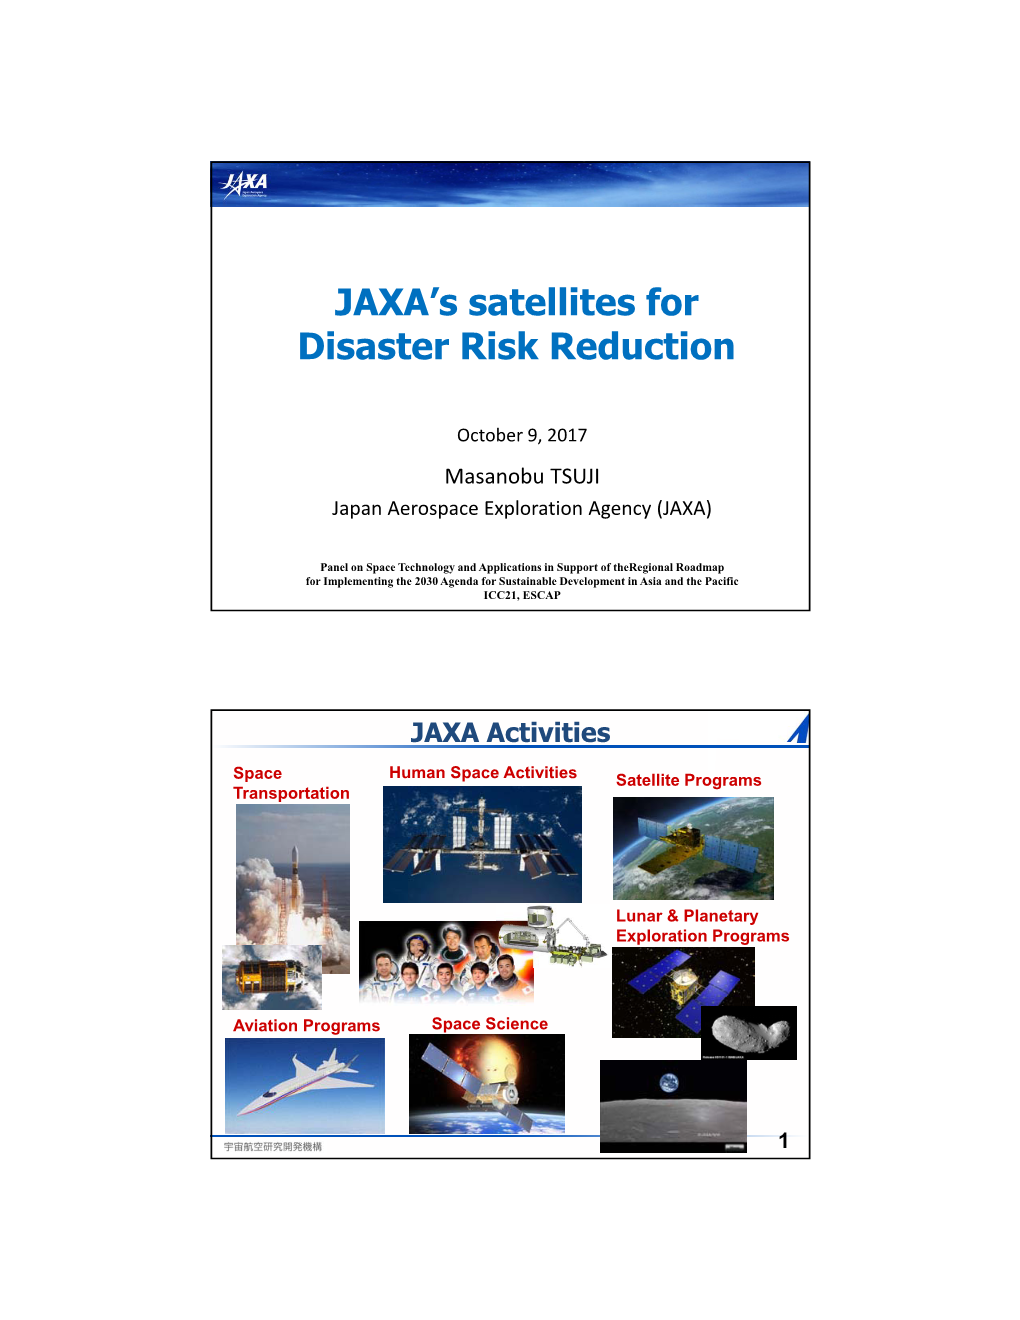 JAXA's Satellites for Disaster Risk Reduction